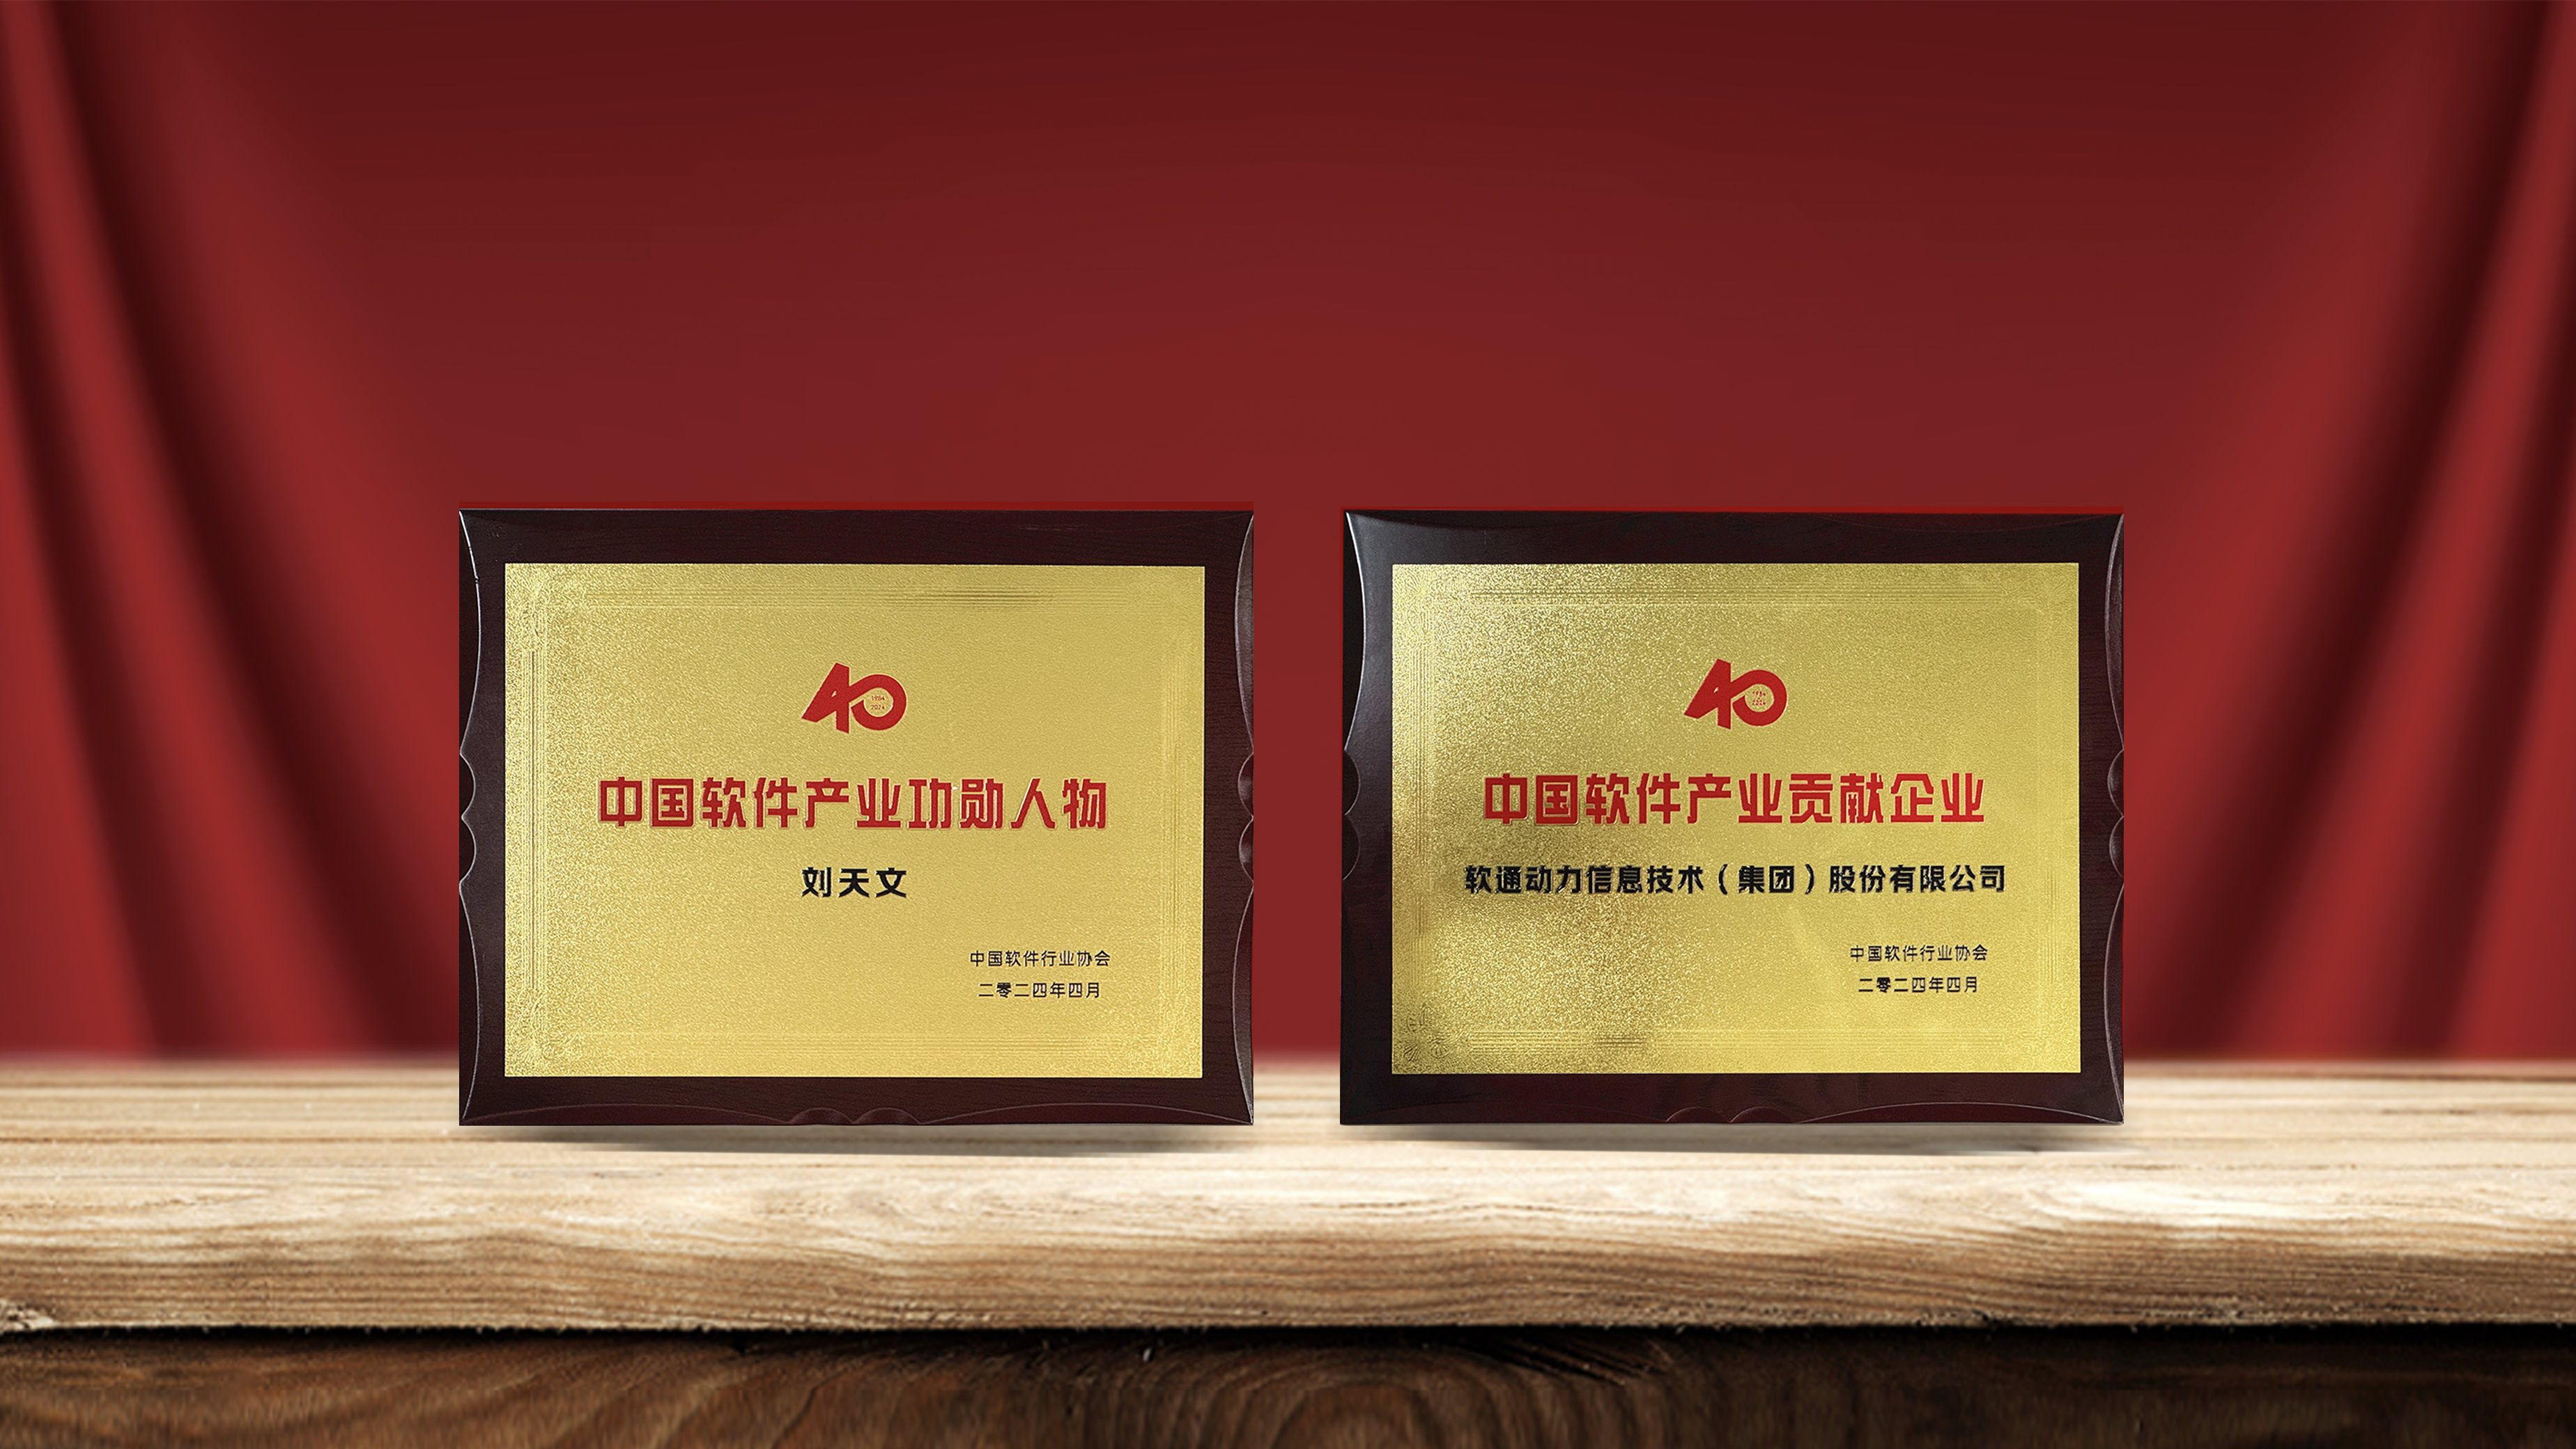 澳门新葡萄新京威尼斯987获产业权威认可  刘天文荣选“中国软件产业40年功勋人物”